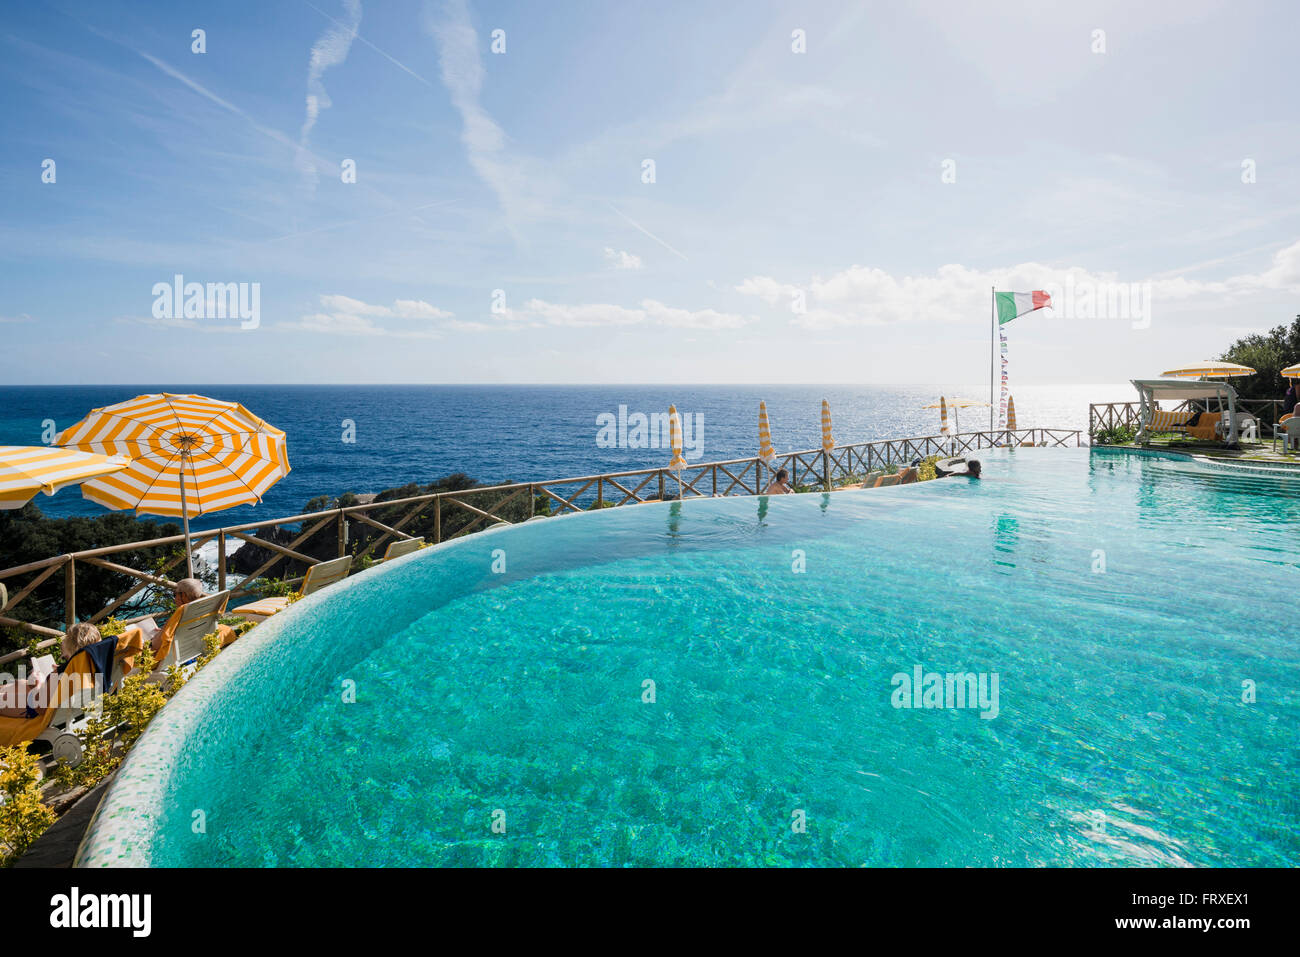 Swimming pool of a hotel, Monterosso al Mare, Cinque Terre, La Spezia, Liguria, Italy Stock Photo